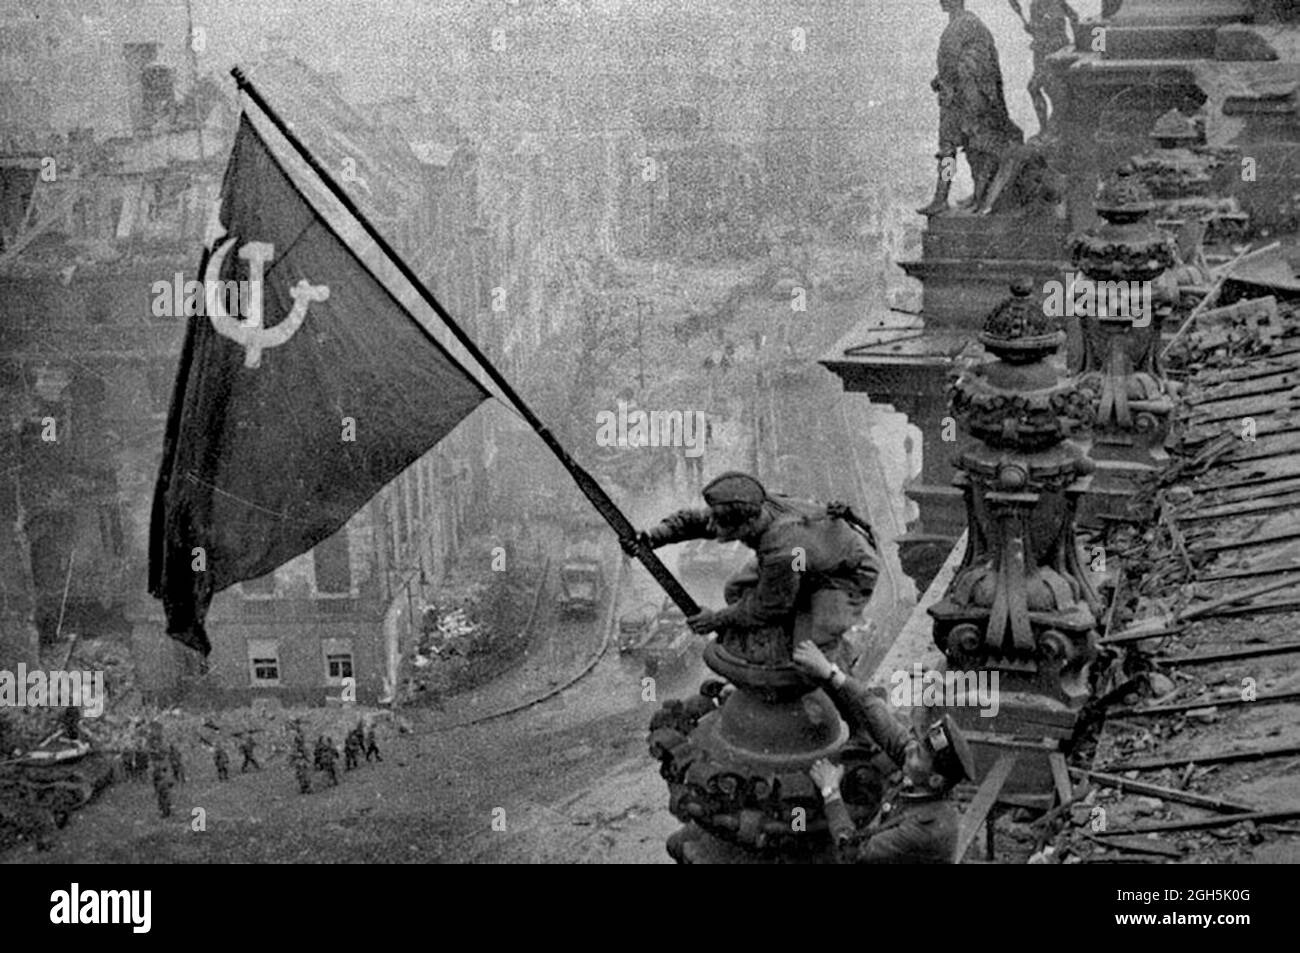 Un soldat soviétique levant le drapeau rouge communiste sur le Reichstag à Berlin, avril 1945. C'est la photo non docktored - les hommes ont une montre sur chaque poignet. Des versions ultérieures, censurées par le gouvernement soviétique, ont fait enlever ces montres volées de la photo. Banque D'Images